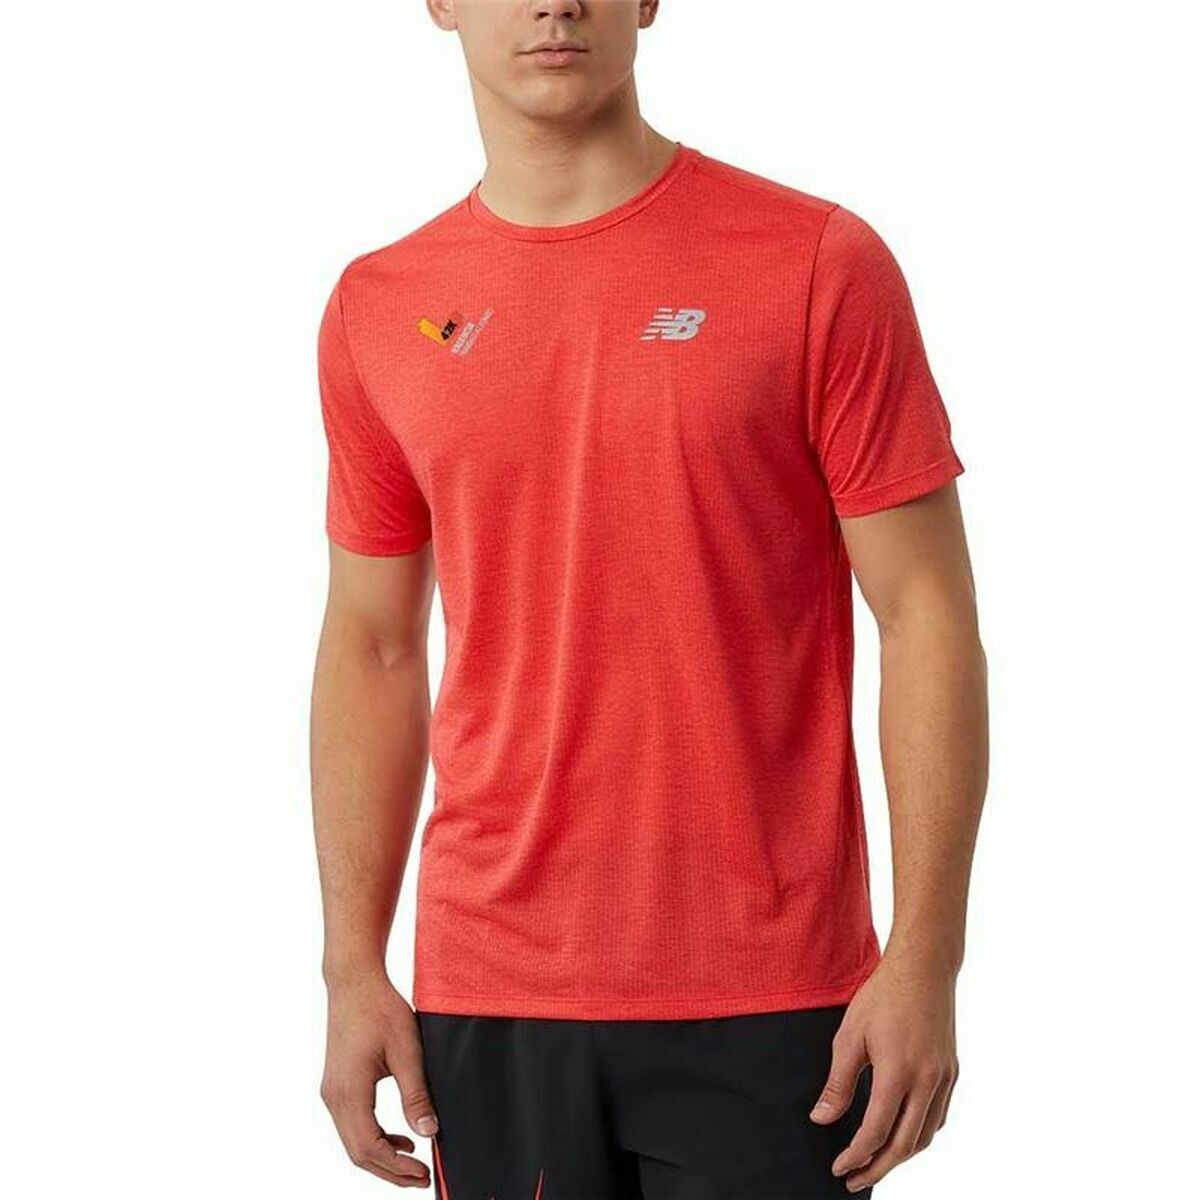 Kaufe Kurzärmliges Sport T-Shirt New Balance Impact Run Orange bei AWK Flagship um € 51.00